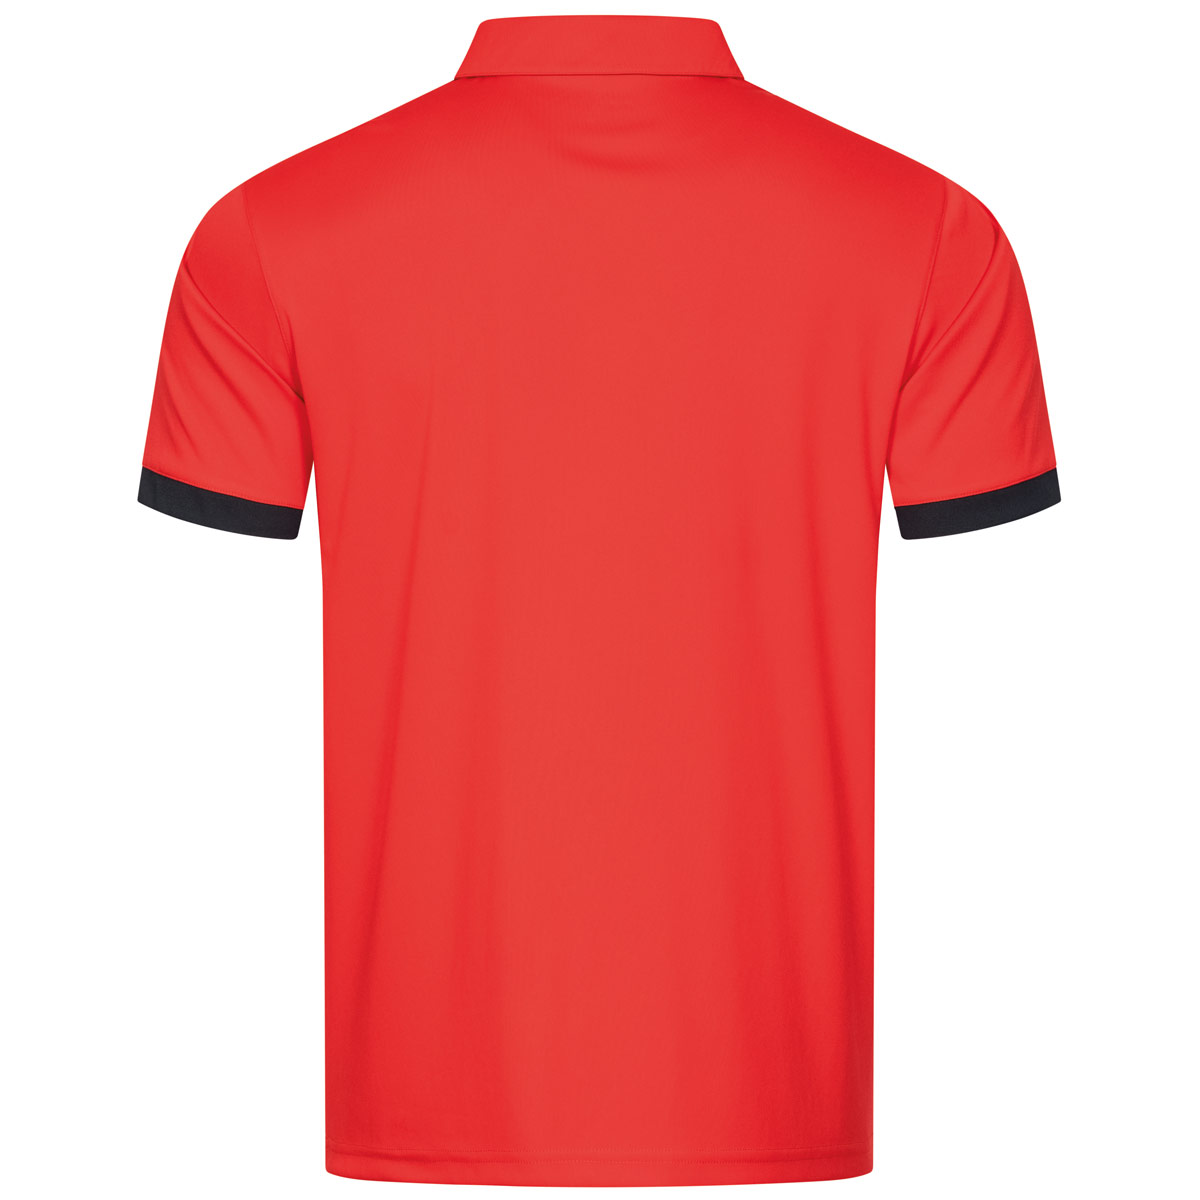 Donic Shirt Aviator red/black S